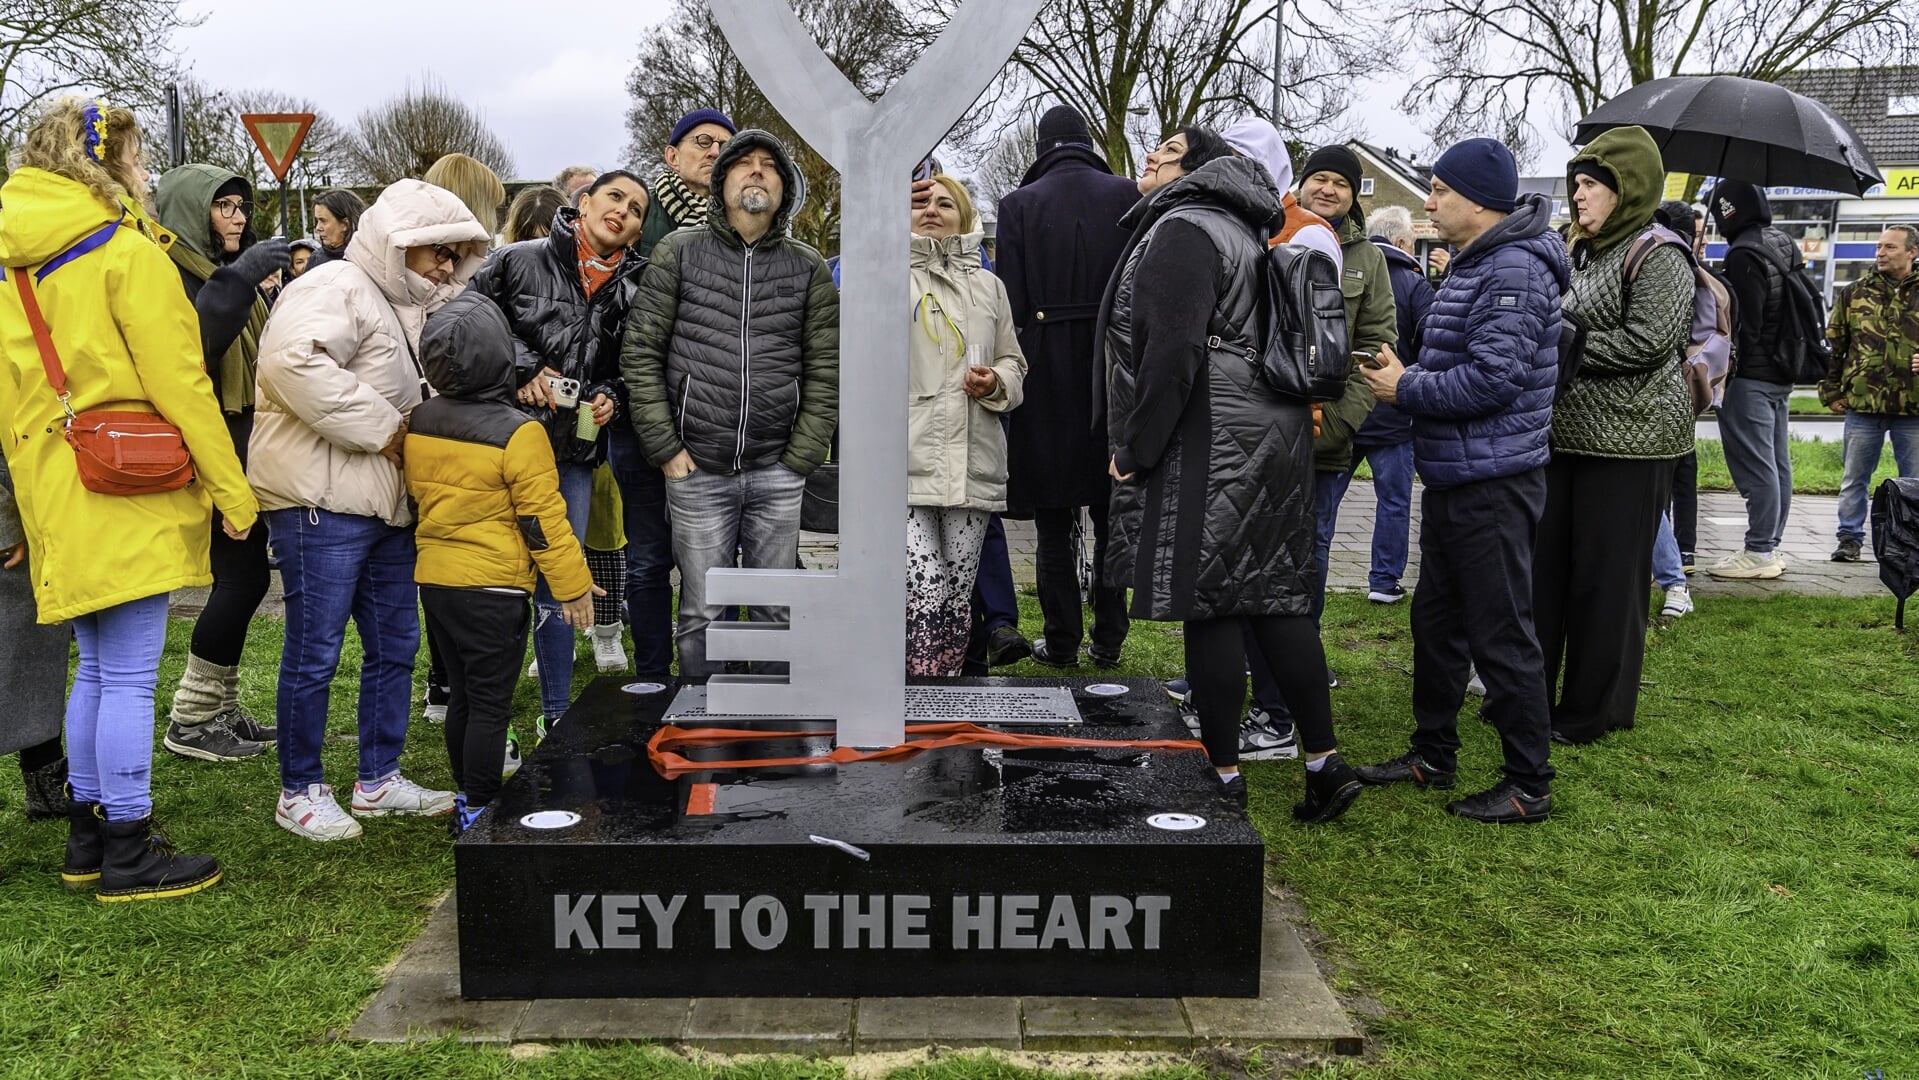 De onthulling van het monument 'Key to the heart' aan de Pierebaan in Monnickendam.